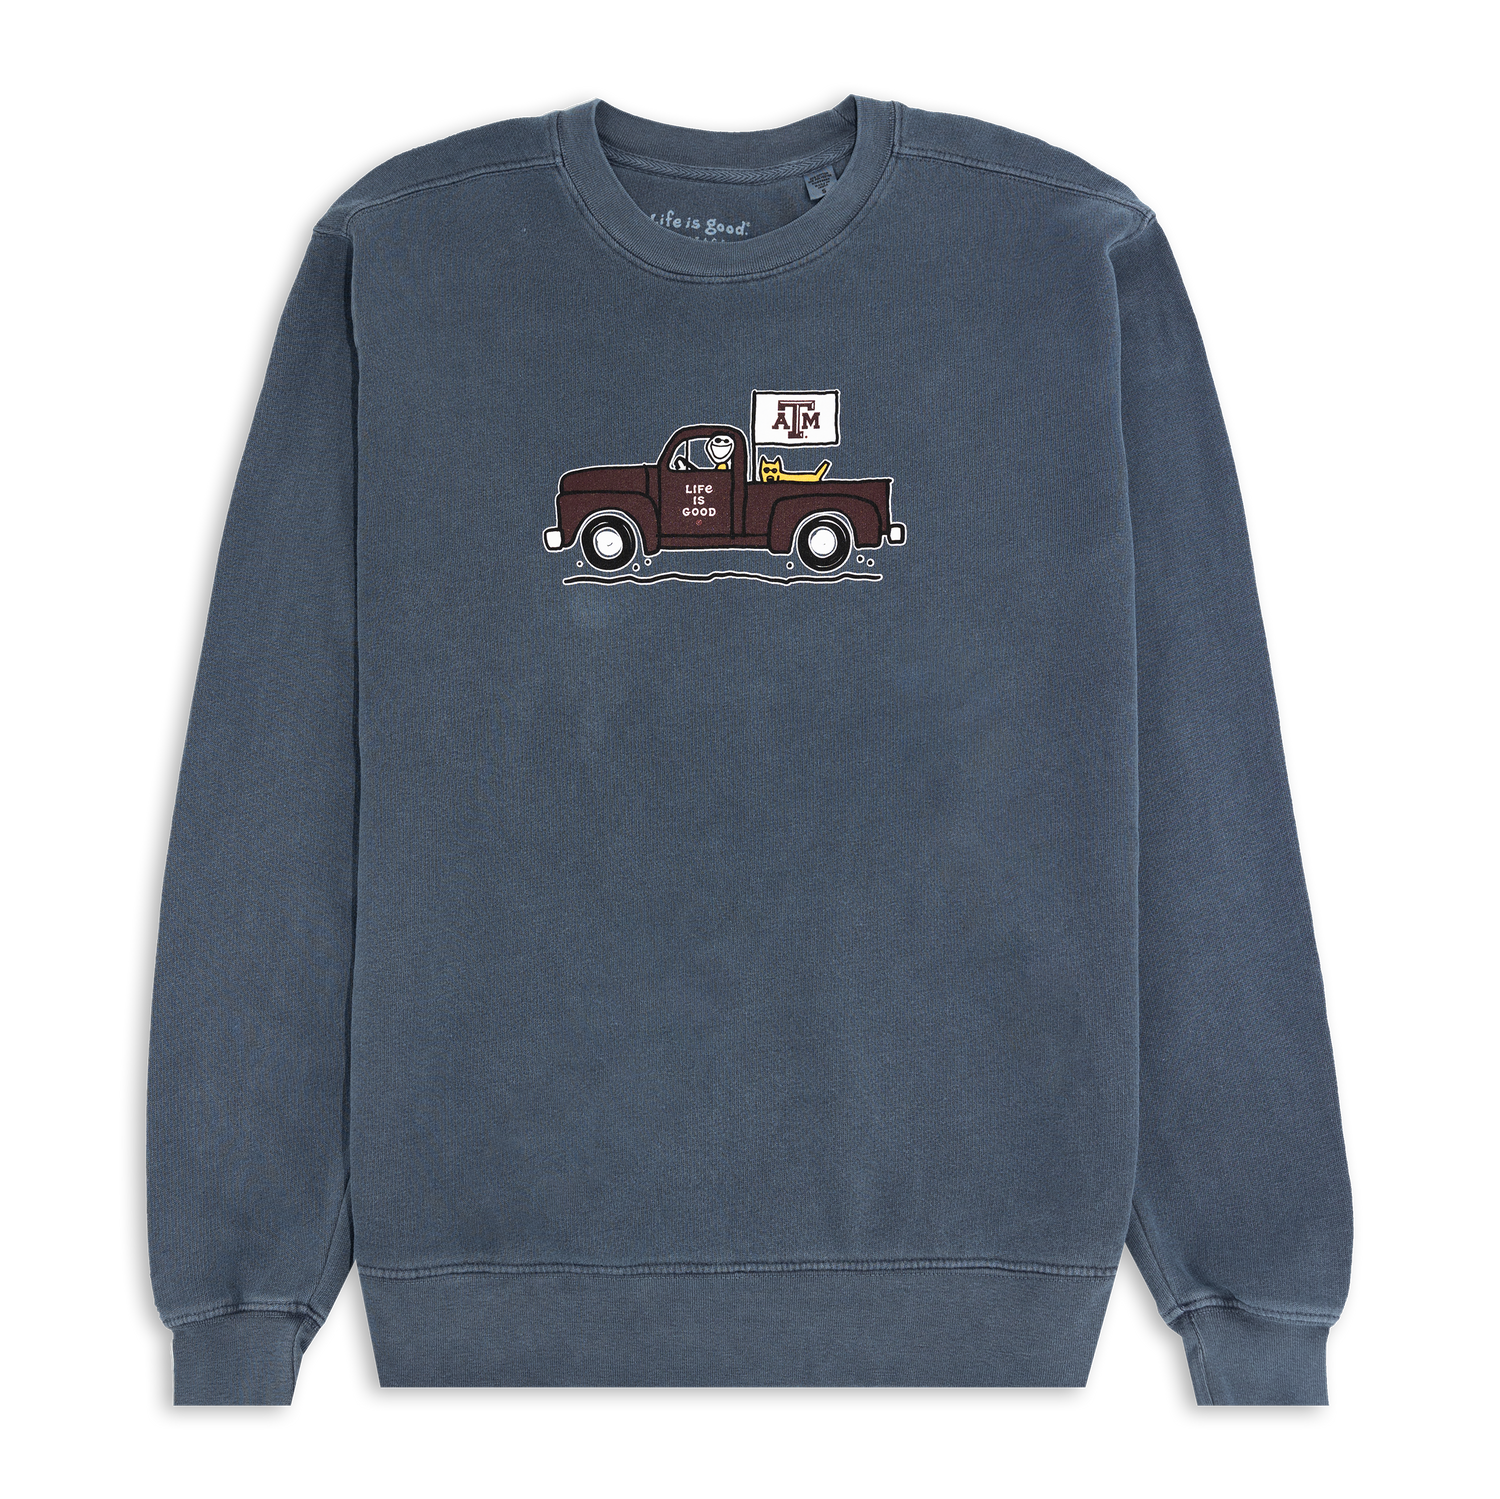 Texas A&M Life is Good Jake Old Truck Indigo Sweatshirt